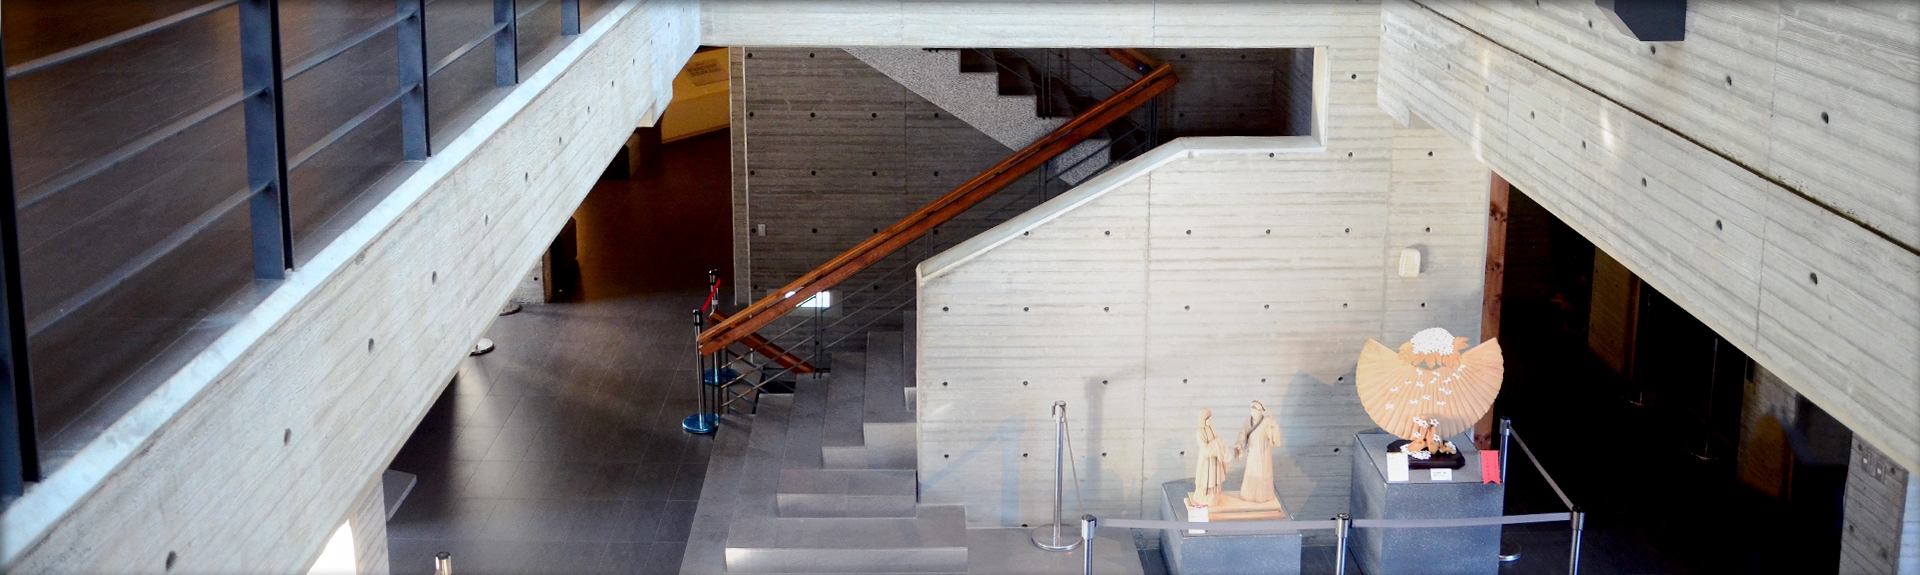 三義木雕博物館清水模空間